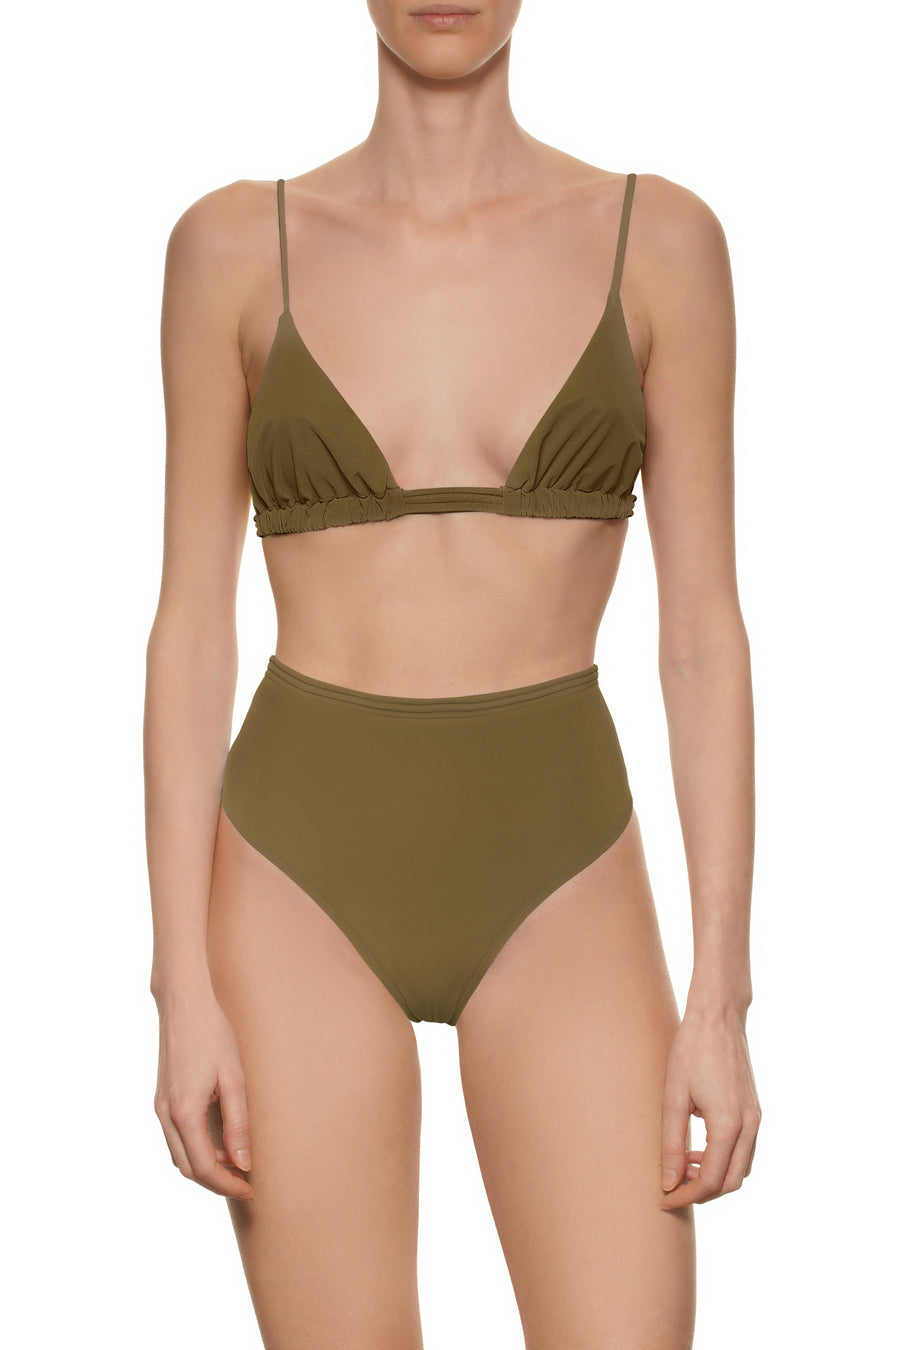 Olive Green Cheeky Bikini